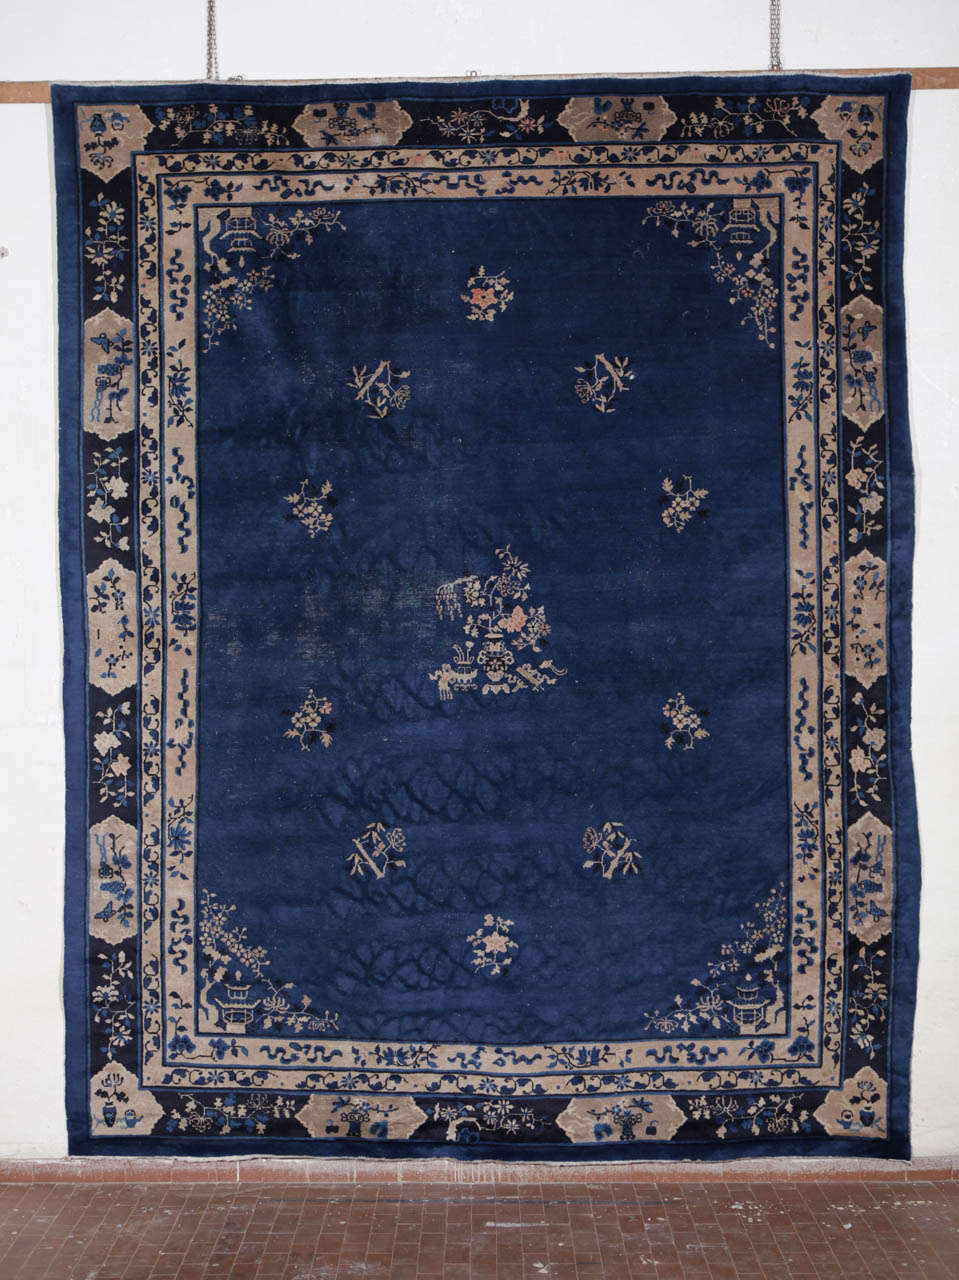 Ein schöner indigoblauer Peking-Teppich aus dem frühen 20.
Maße: cm 350 x 280.